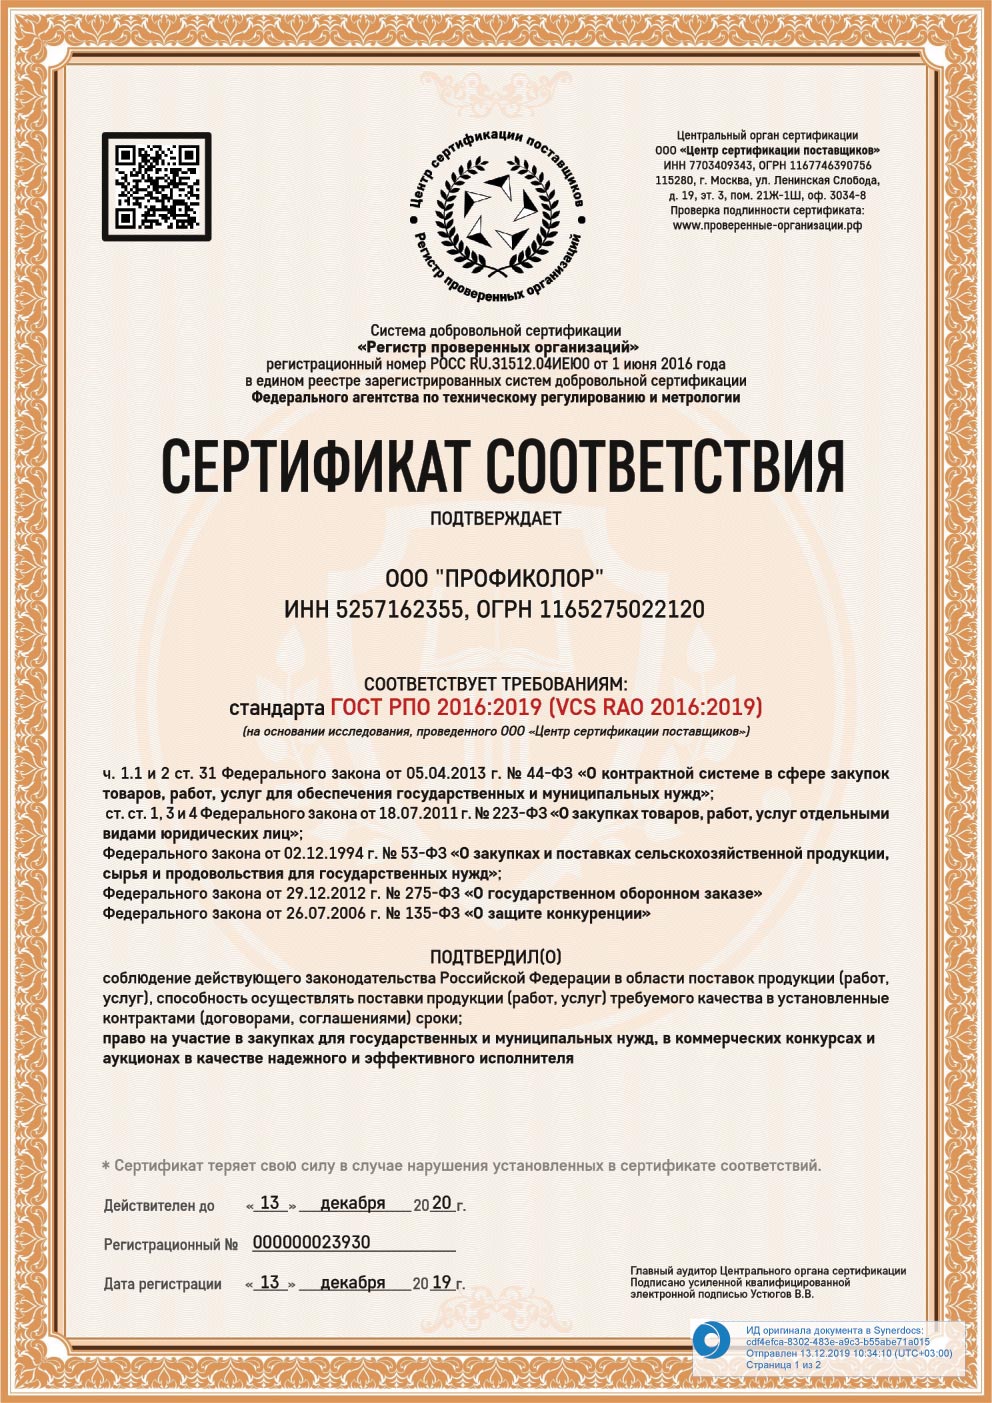 Сертификат соответствия требованиям ГОСТ